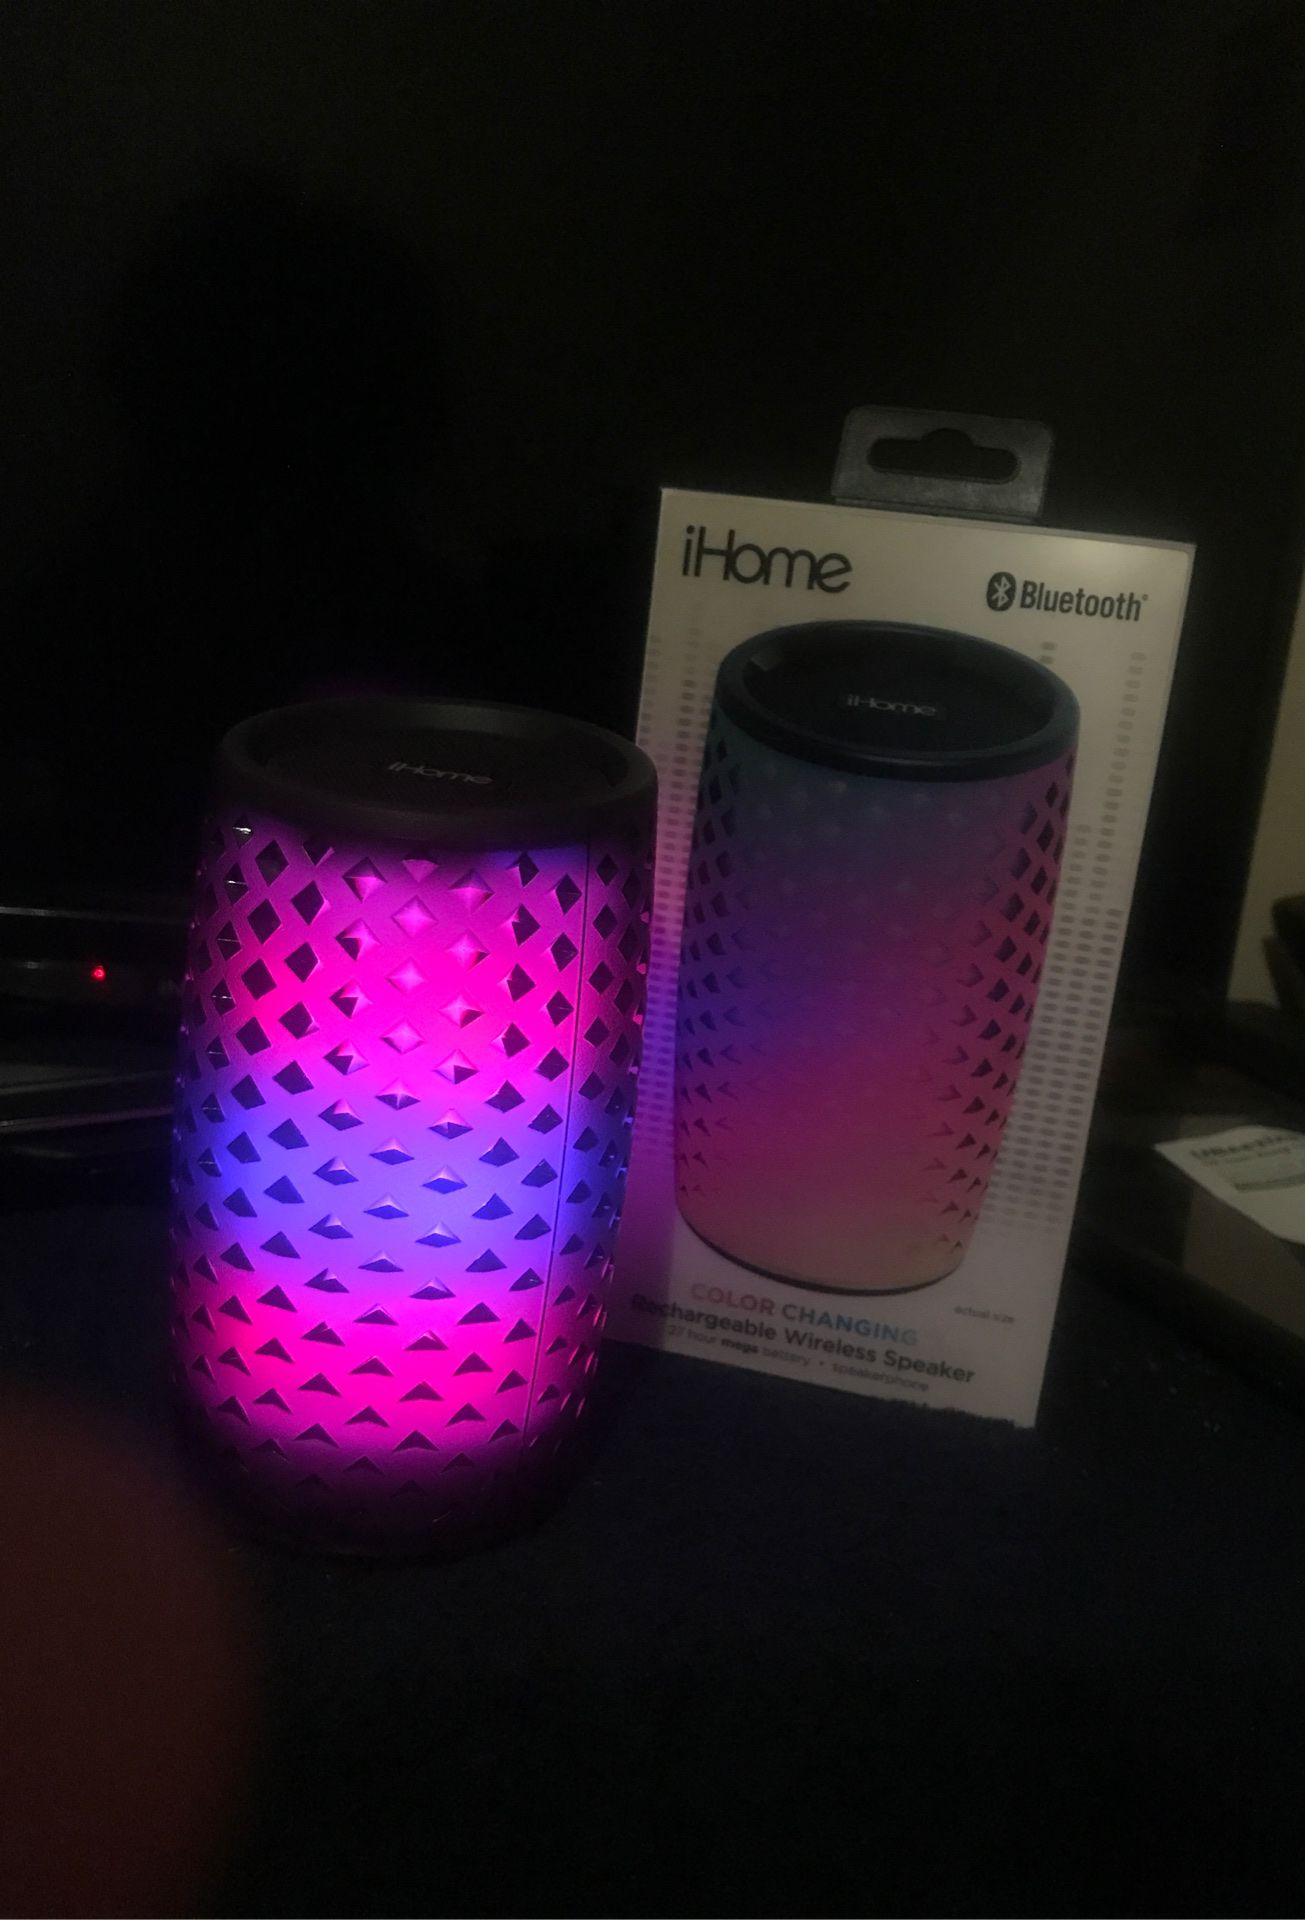 Ihome wireless speaker